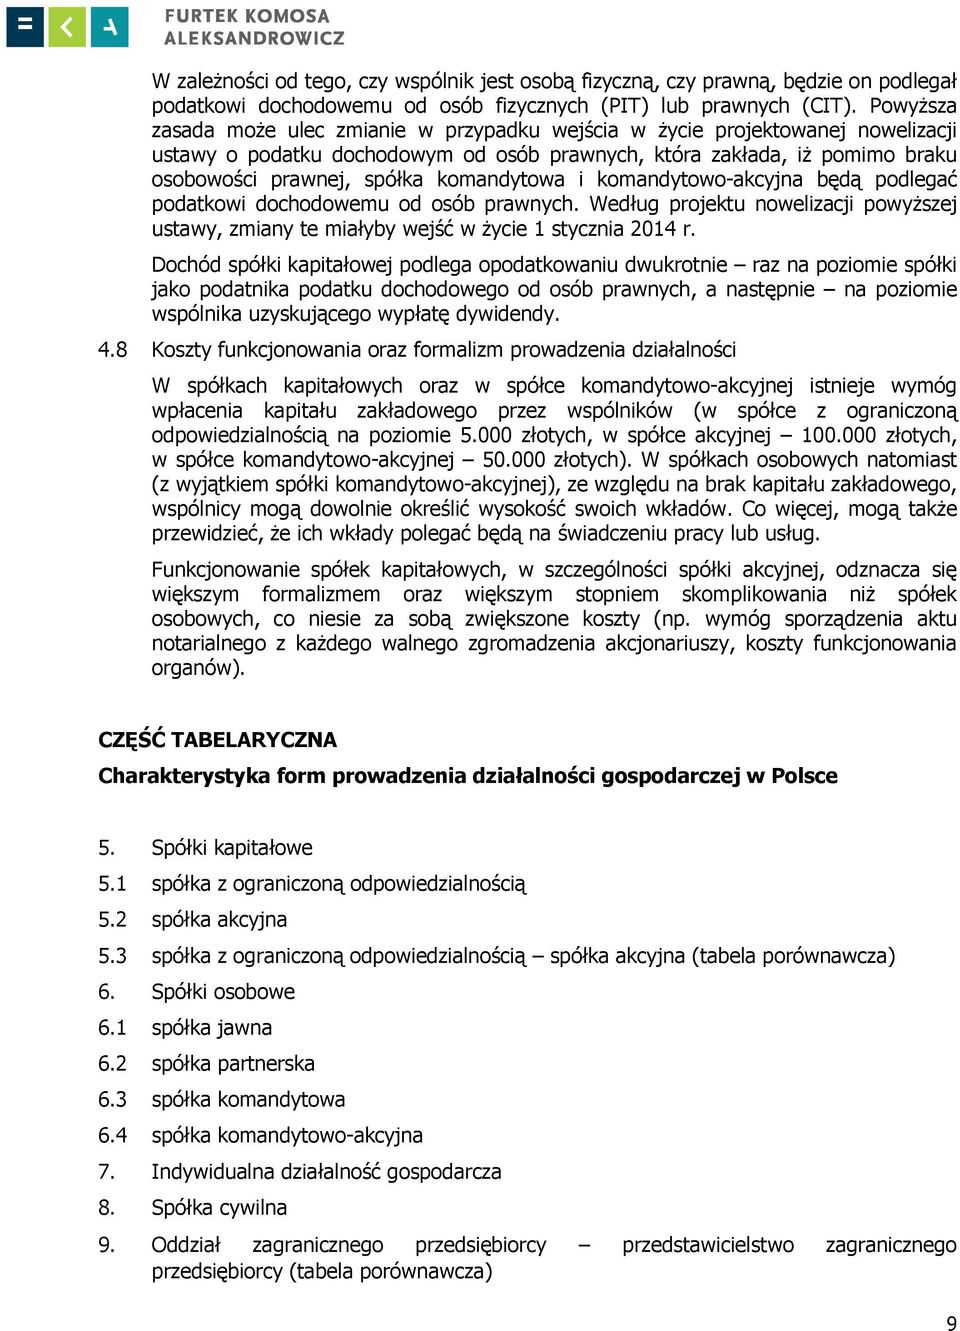 Formy prowadzenia działalności gospodarczej w Polsce - PDF Free Download